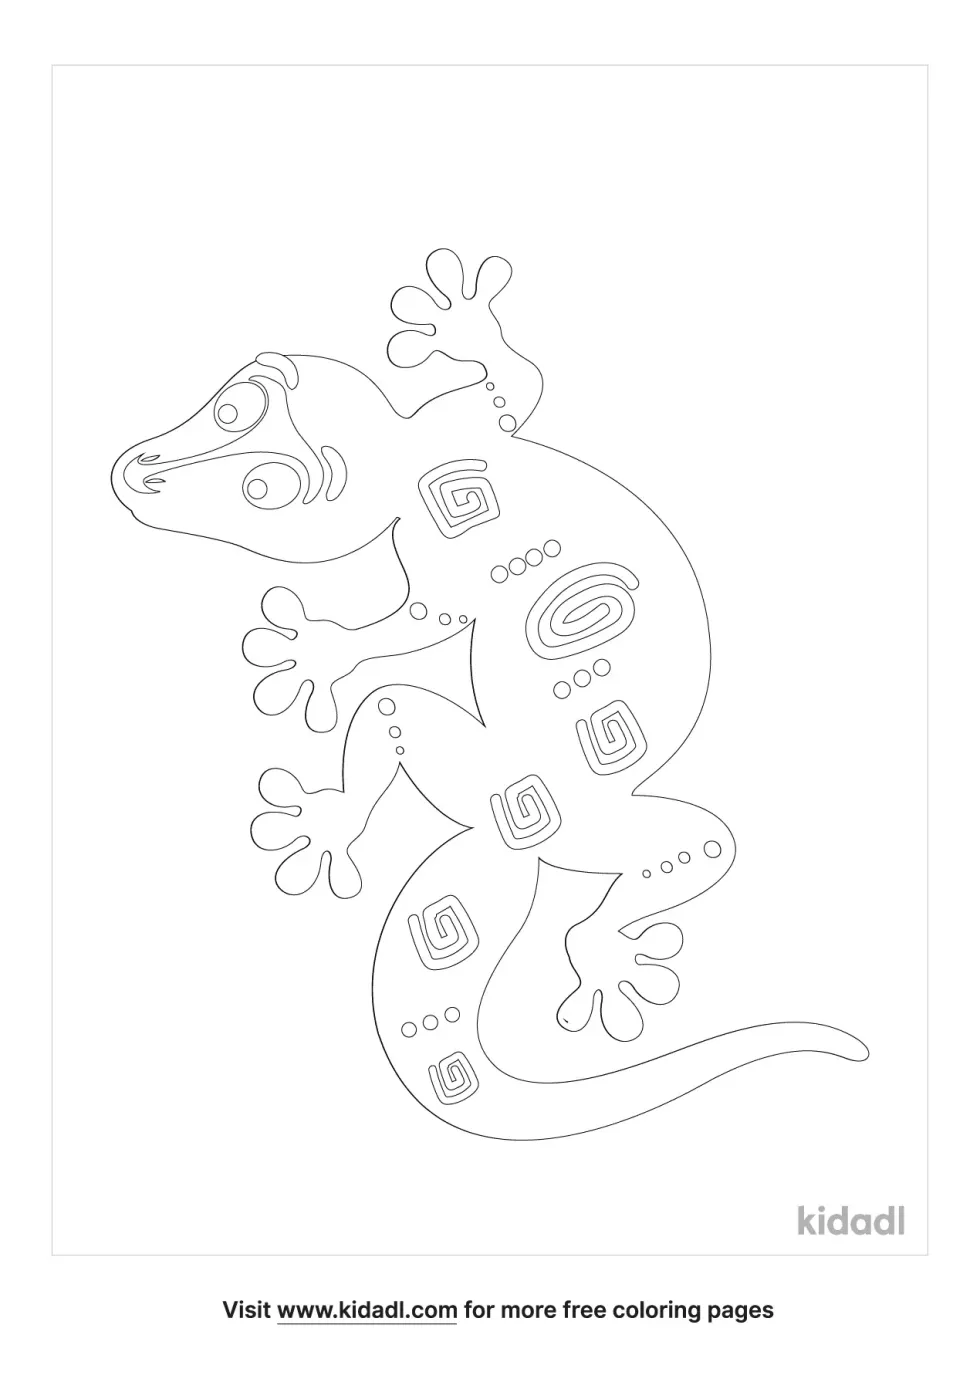 Lizard Aboriginal Art